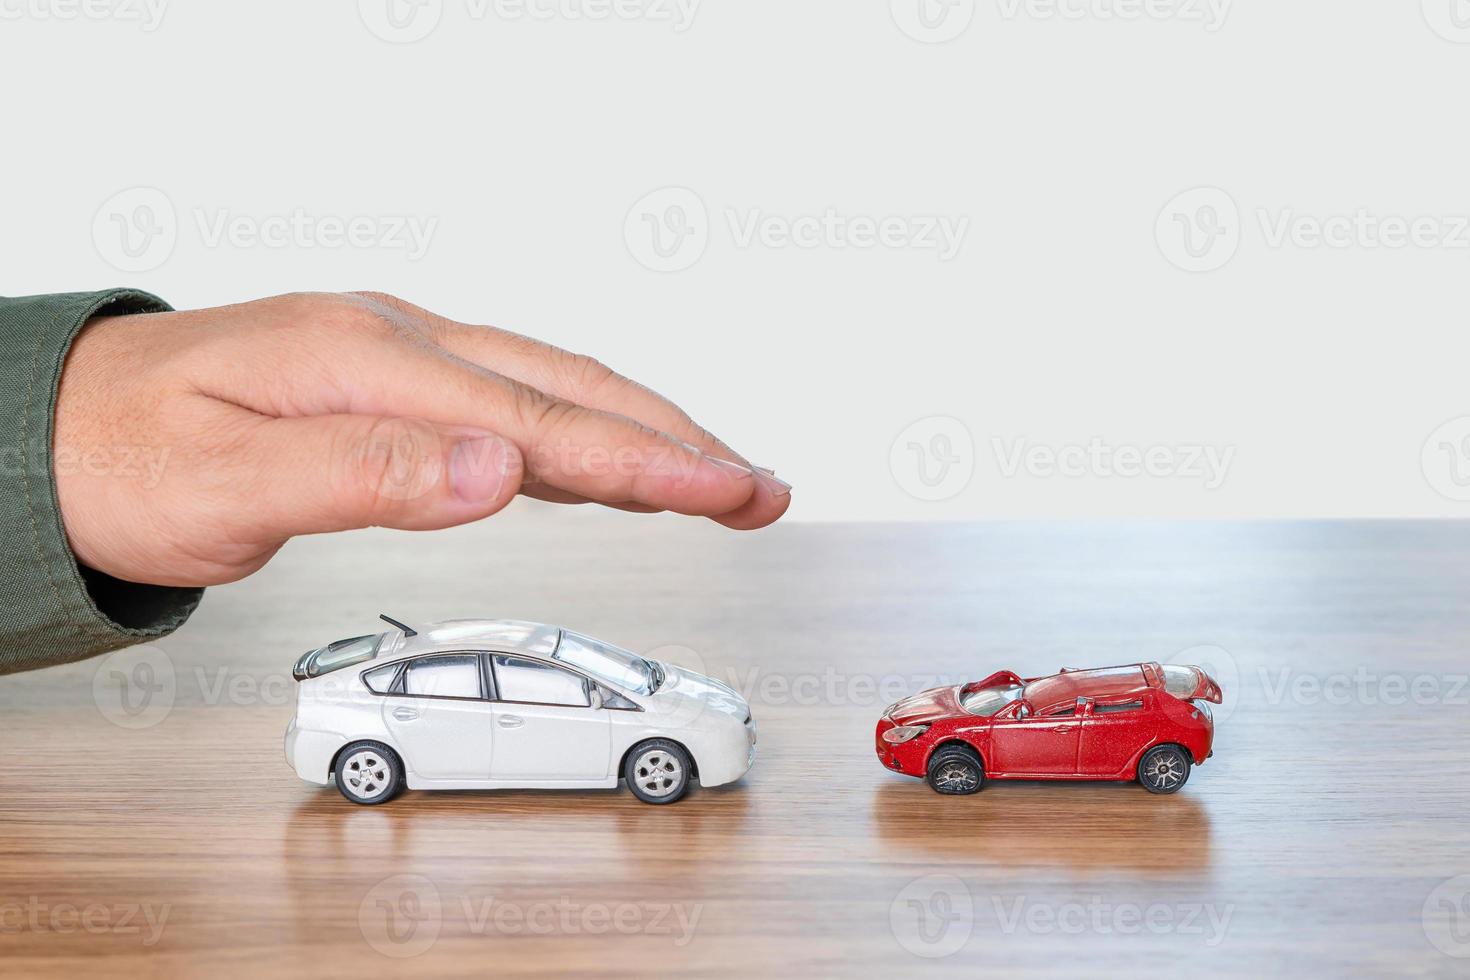 jämförelser av de olycka begrepp i använda sig av bil , leksak bil perfekt tillstånd i med hand en man skydd och jämföra de skadad leksak bilar på tabell och vit bakgrund foto